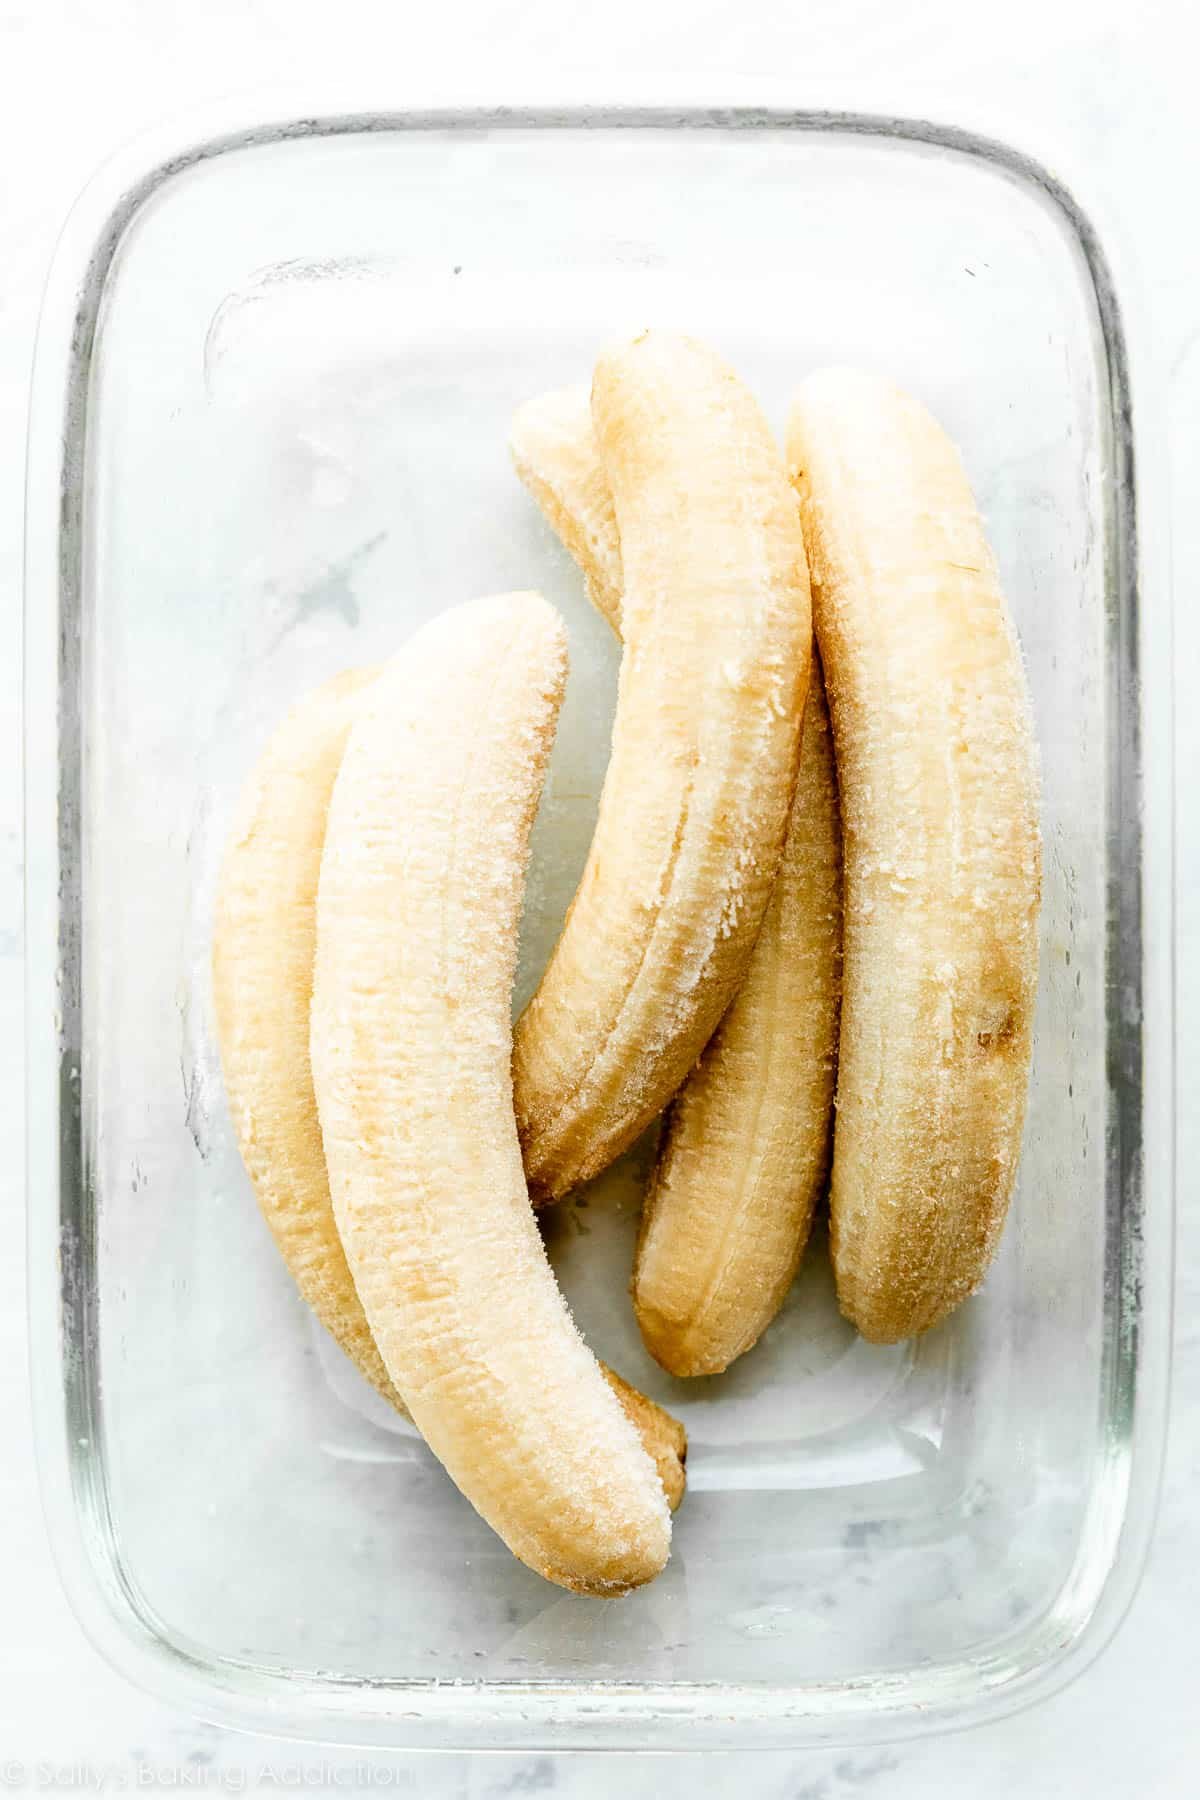 5 banane congelate in un contenitore rettangolare di vetro.